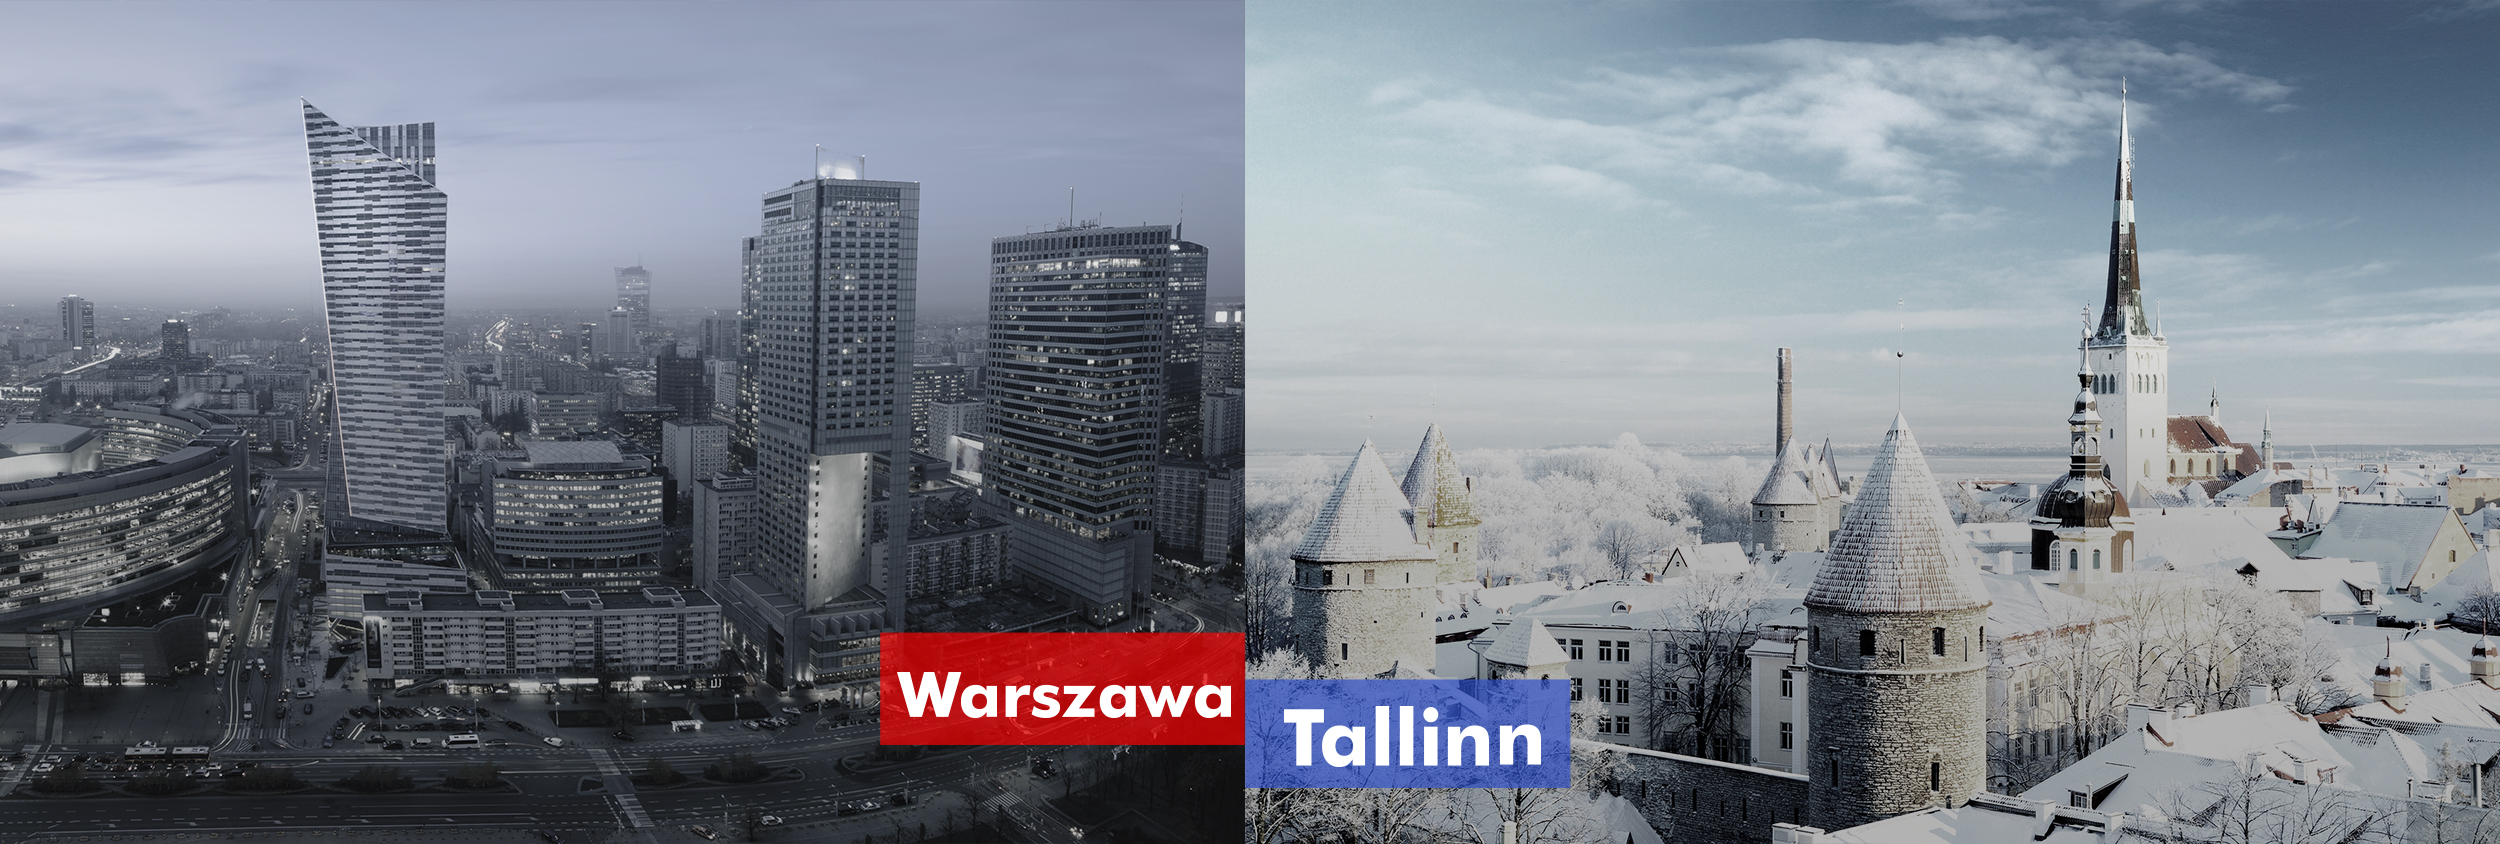 Warszawa_Tallinn